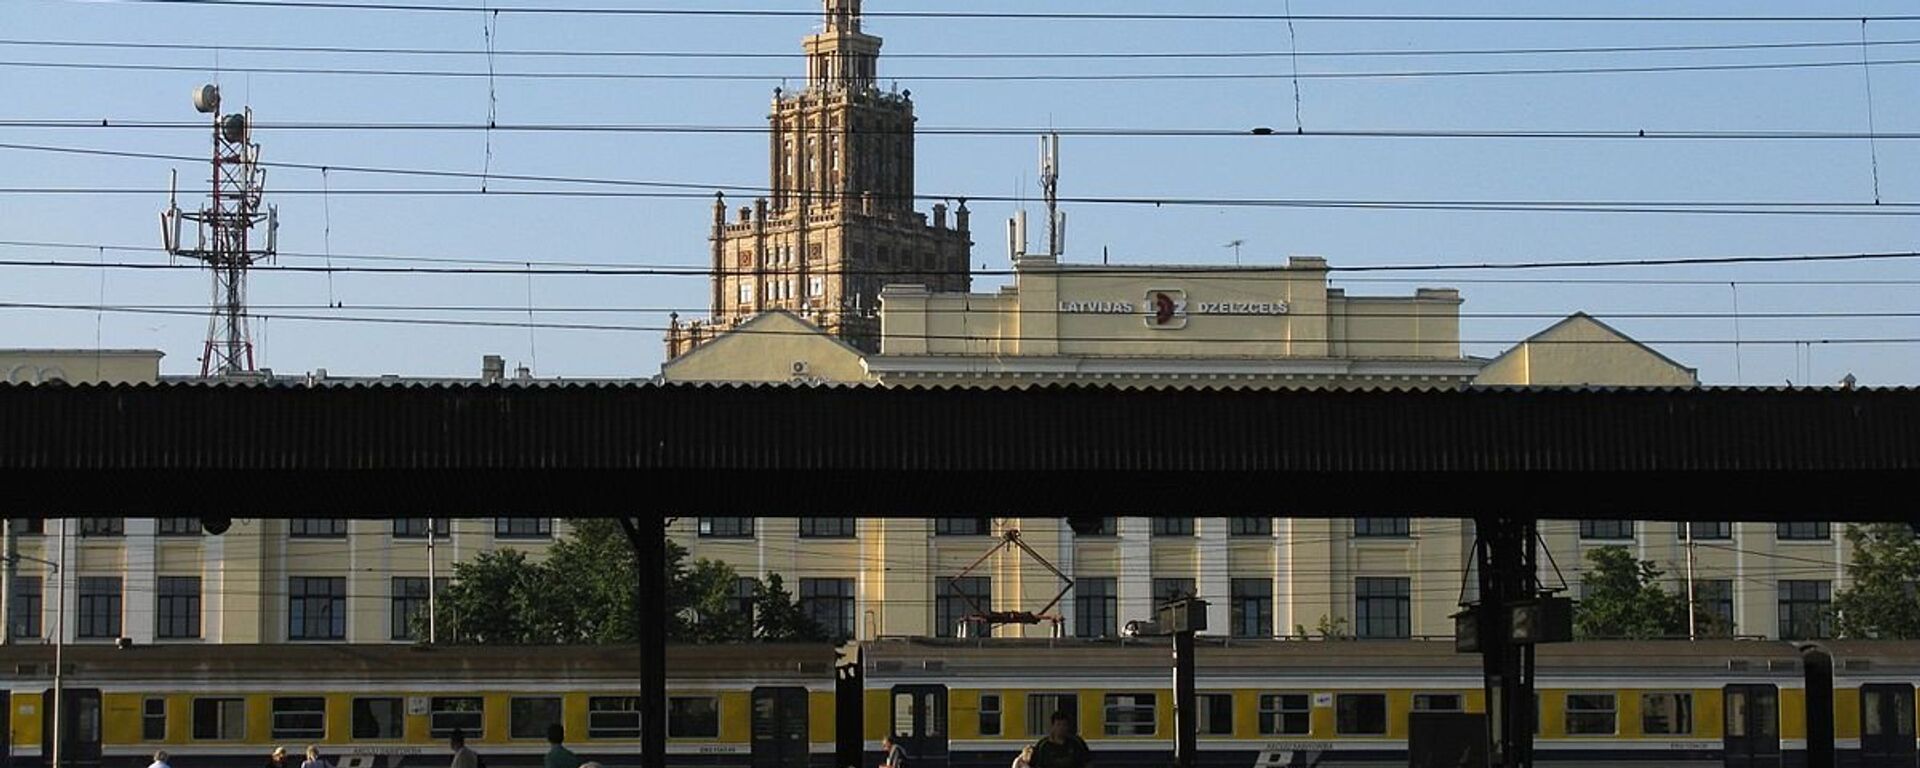 Железнодорожная станция Рига-Пассажирская - Sputnik Латвия, 1920, 10.09.2021